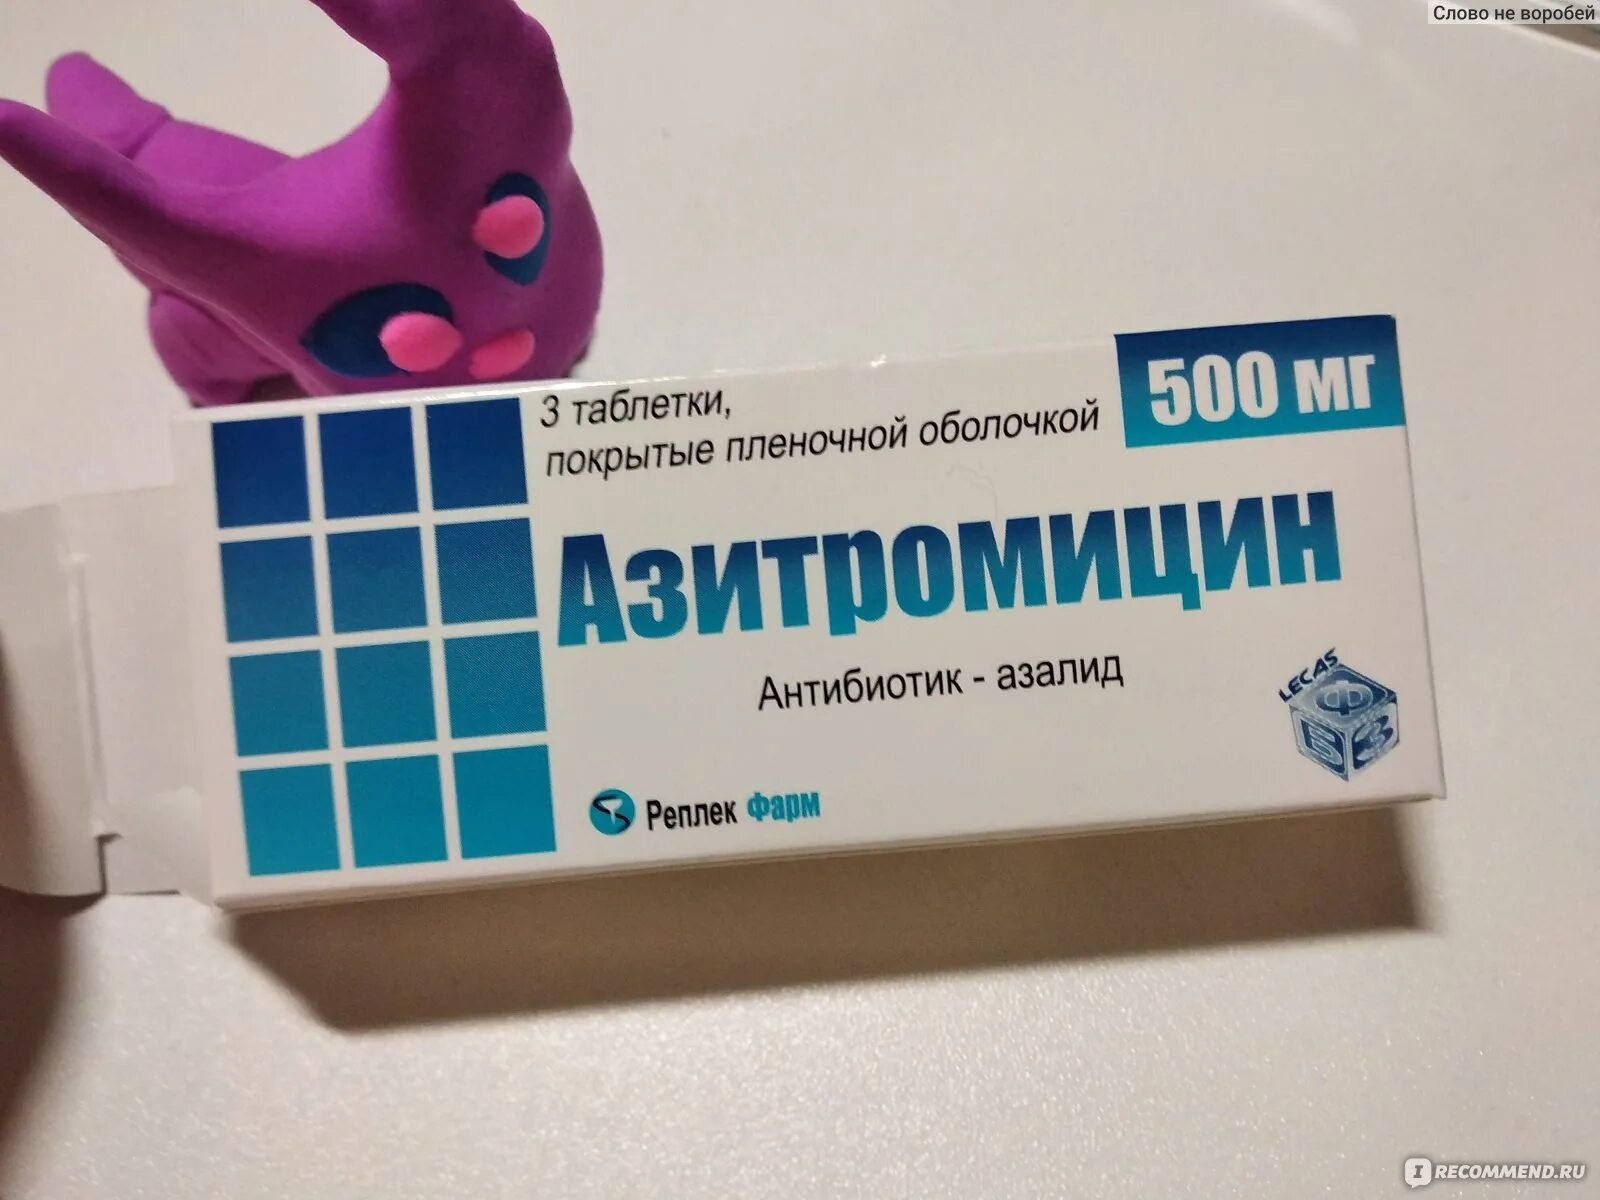 Азитромицин Реплекфарм. Азитромицин 500 Реплекфарм. Антибиотик азалид. Азитромицин Реплекфарм отзывы.